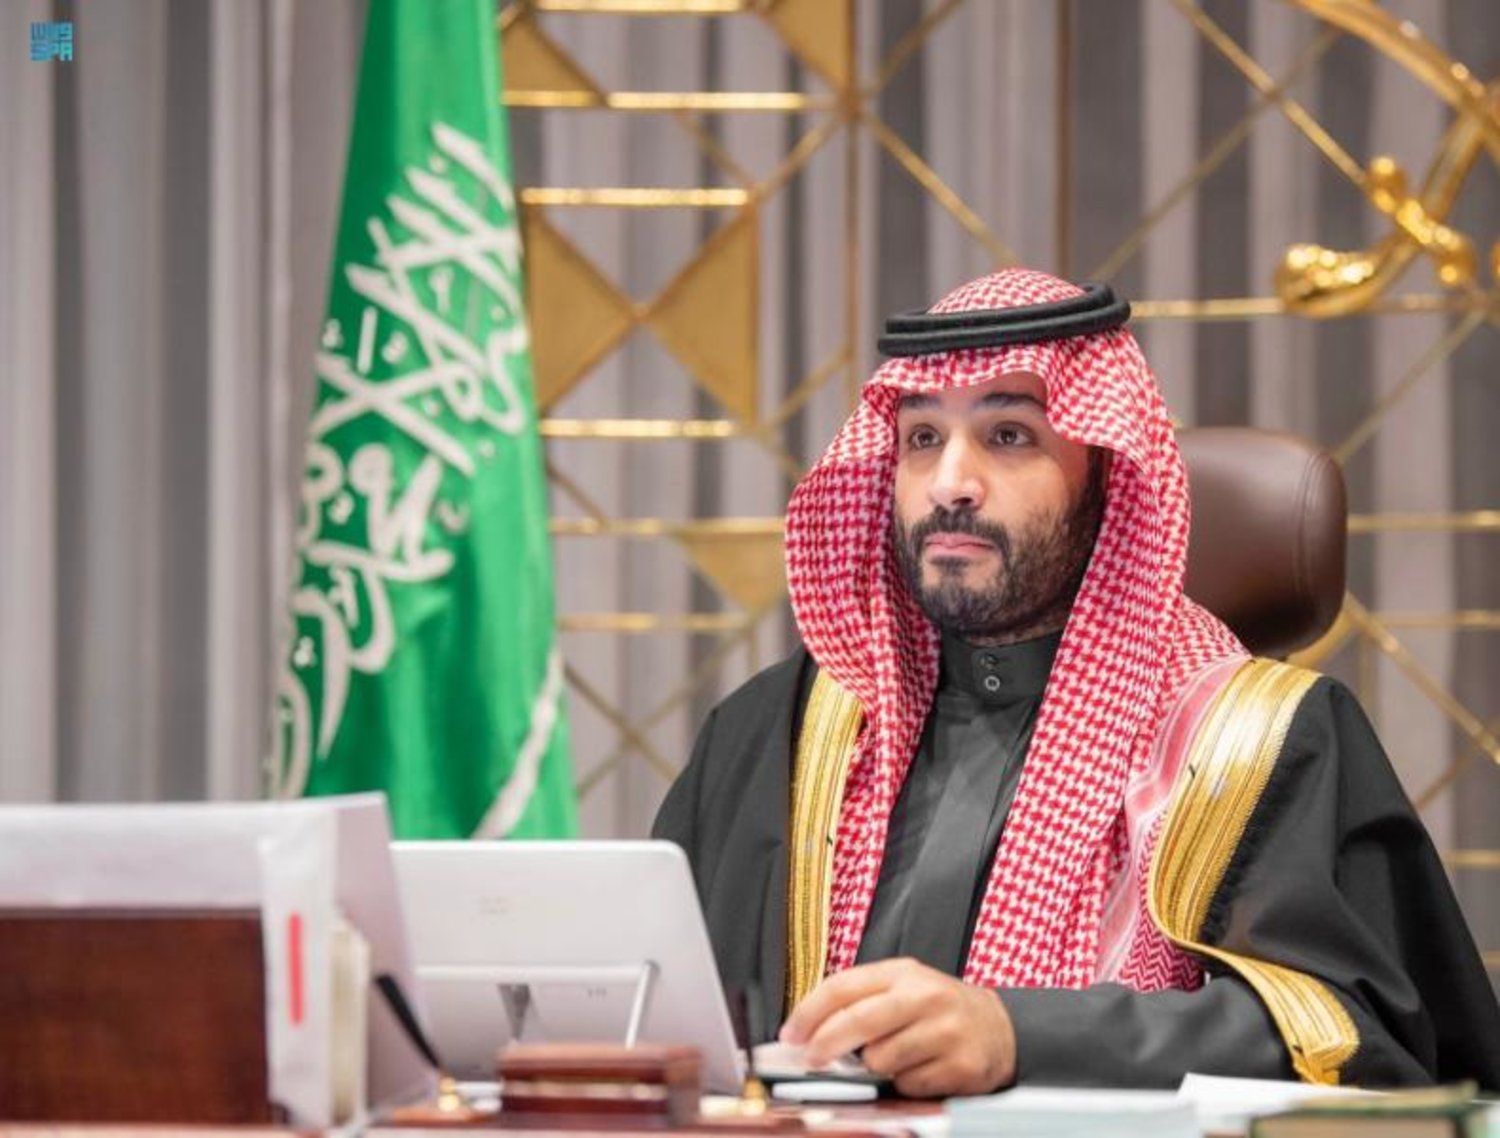 السعودية تفرض الرقابة على الانترنت وتقمع أي صوت معارض للسلطة